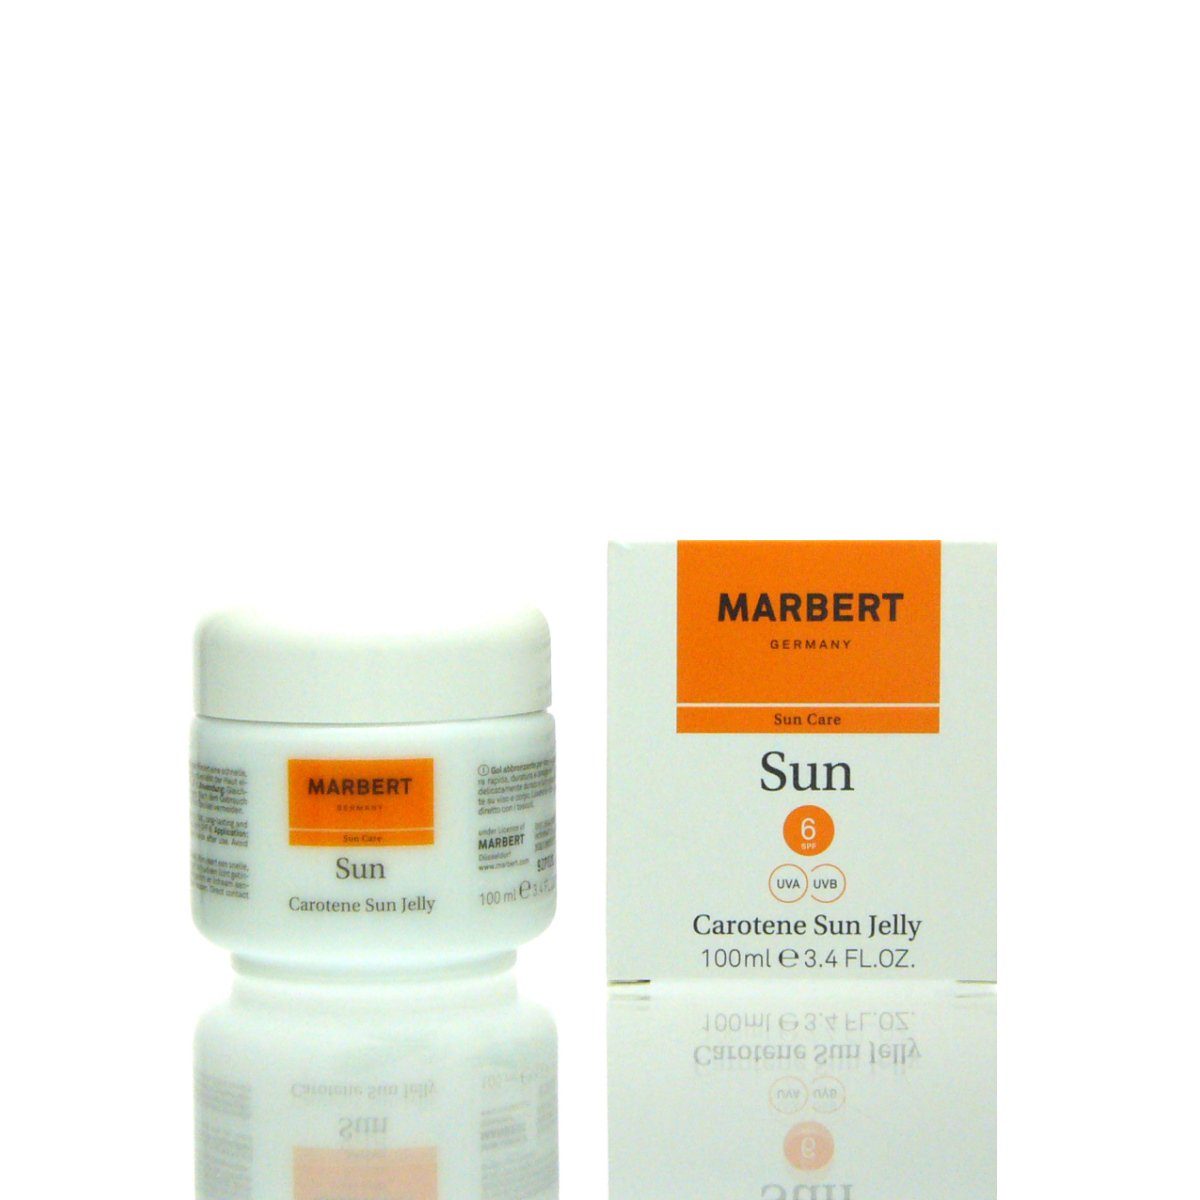 Marbert Carotene Make-up SPF Marbert Sun ml 100 Sun Jelly 6